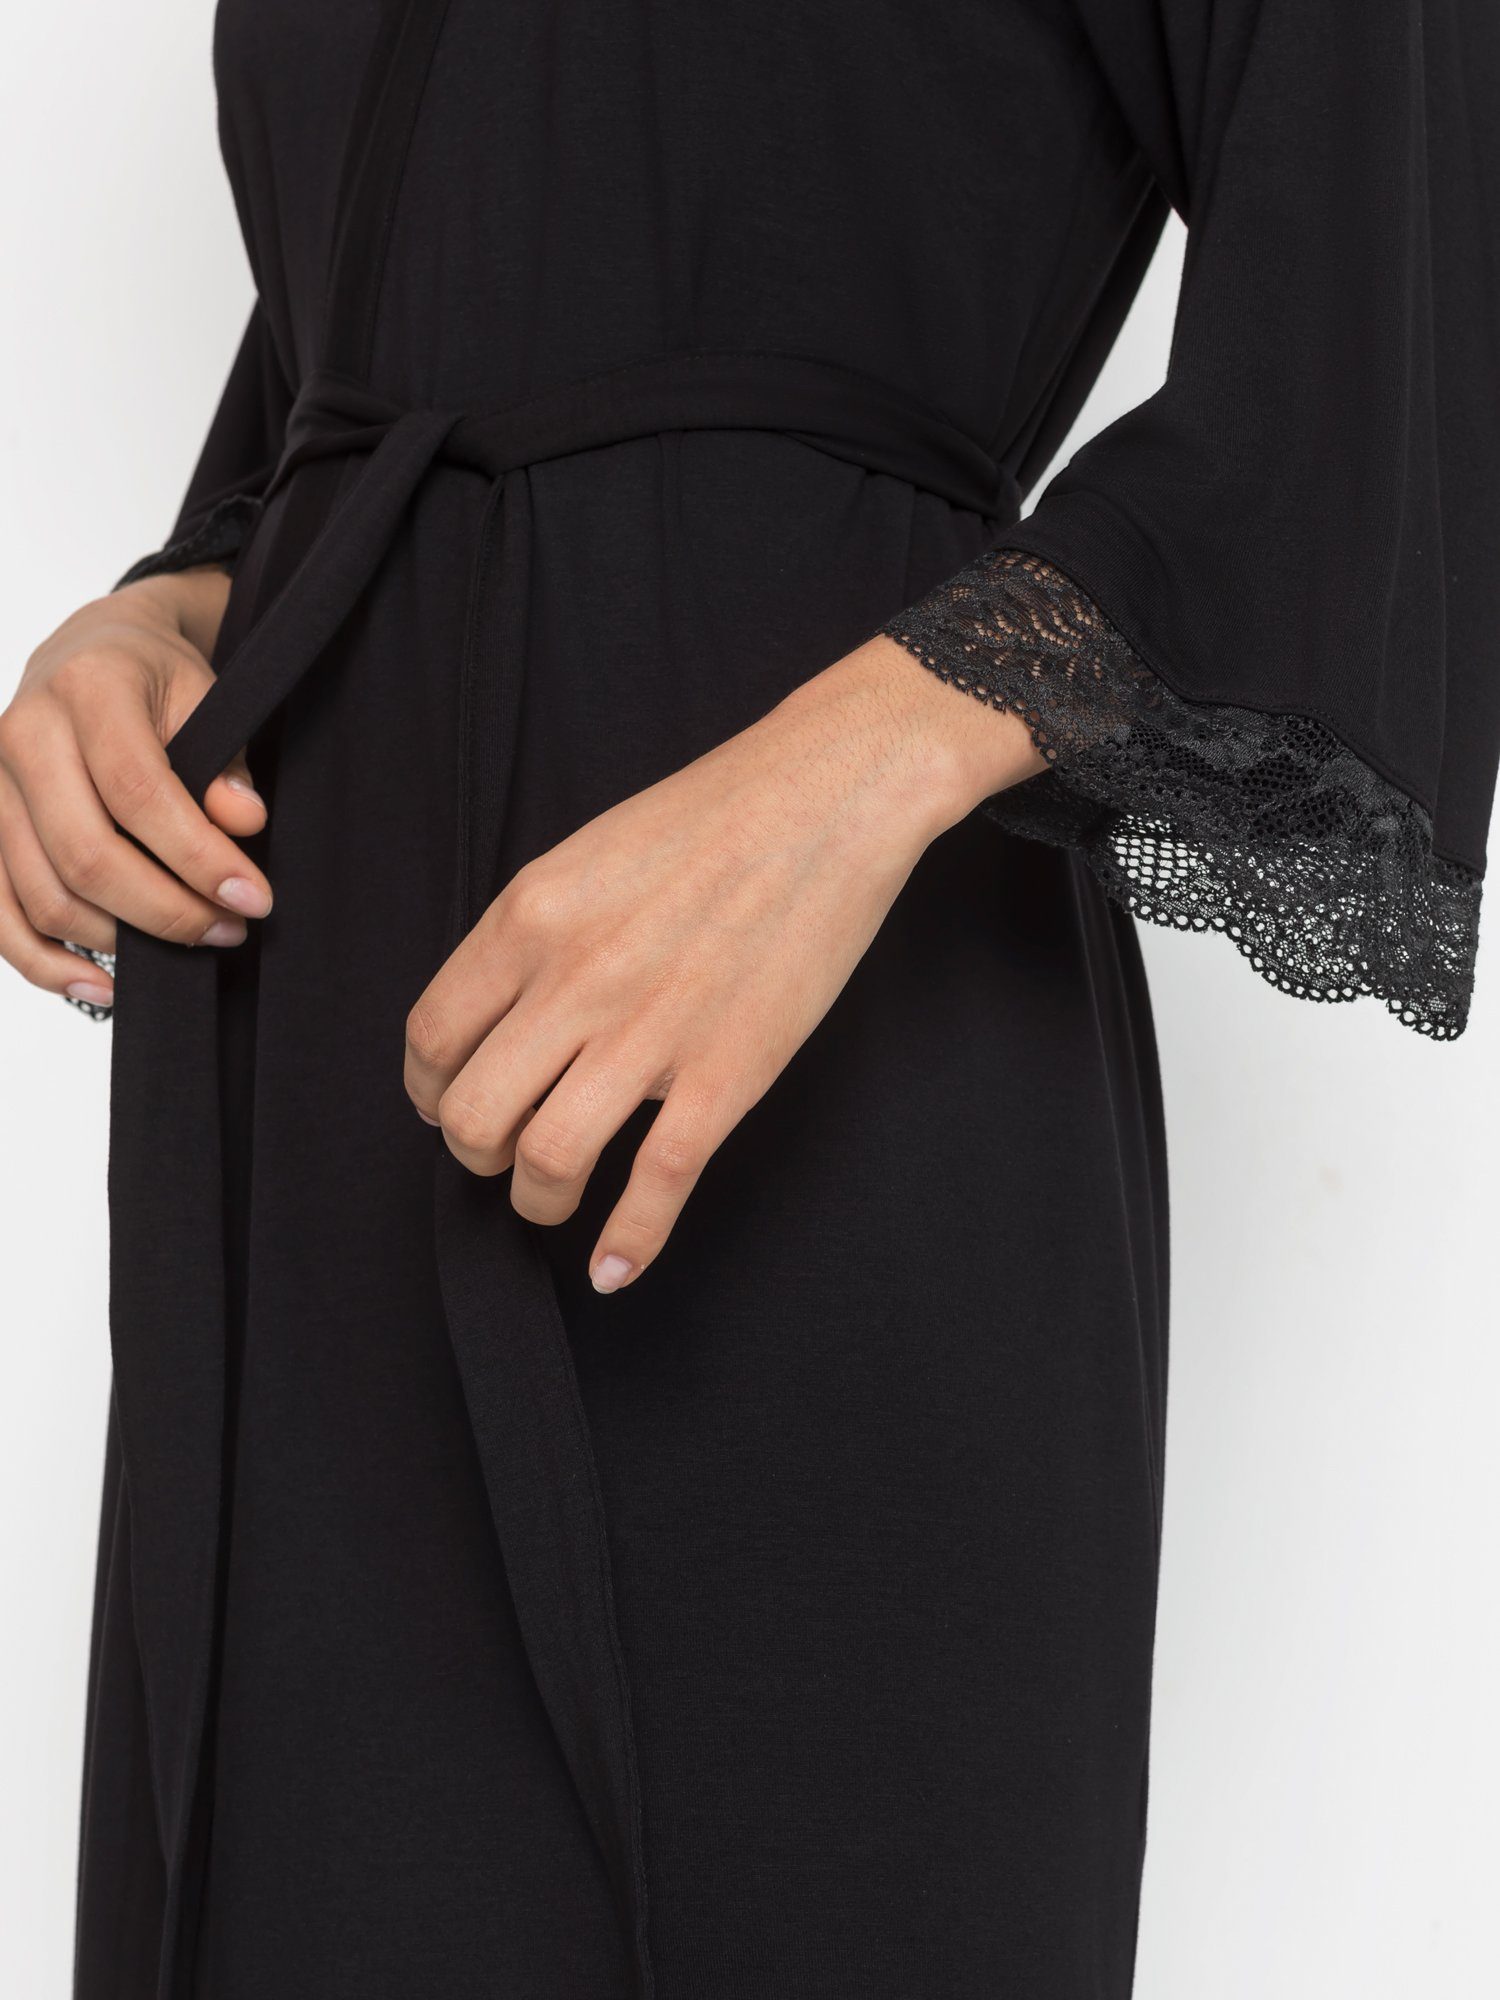 LASCANA Kimono, Midilänge, mit Spitzendetails schönen Kimono-Kragen, schwarz Single-Jersey